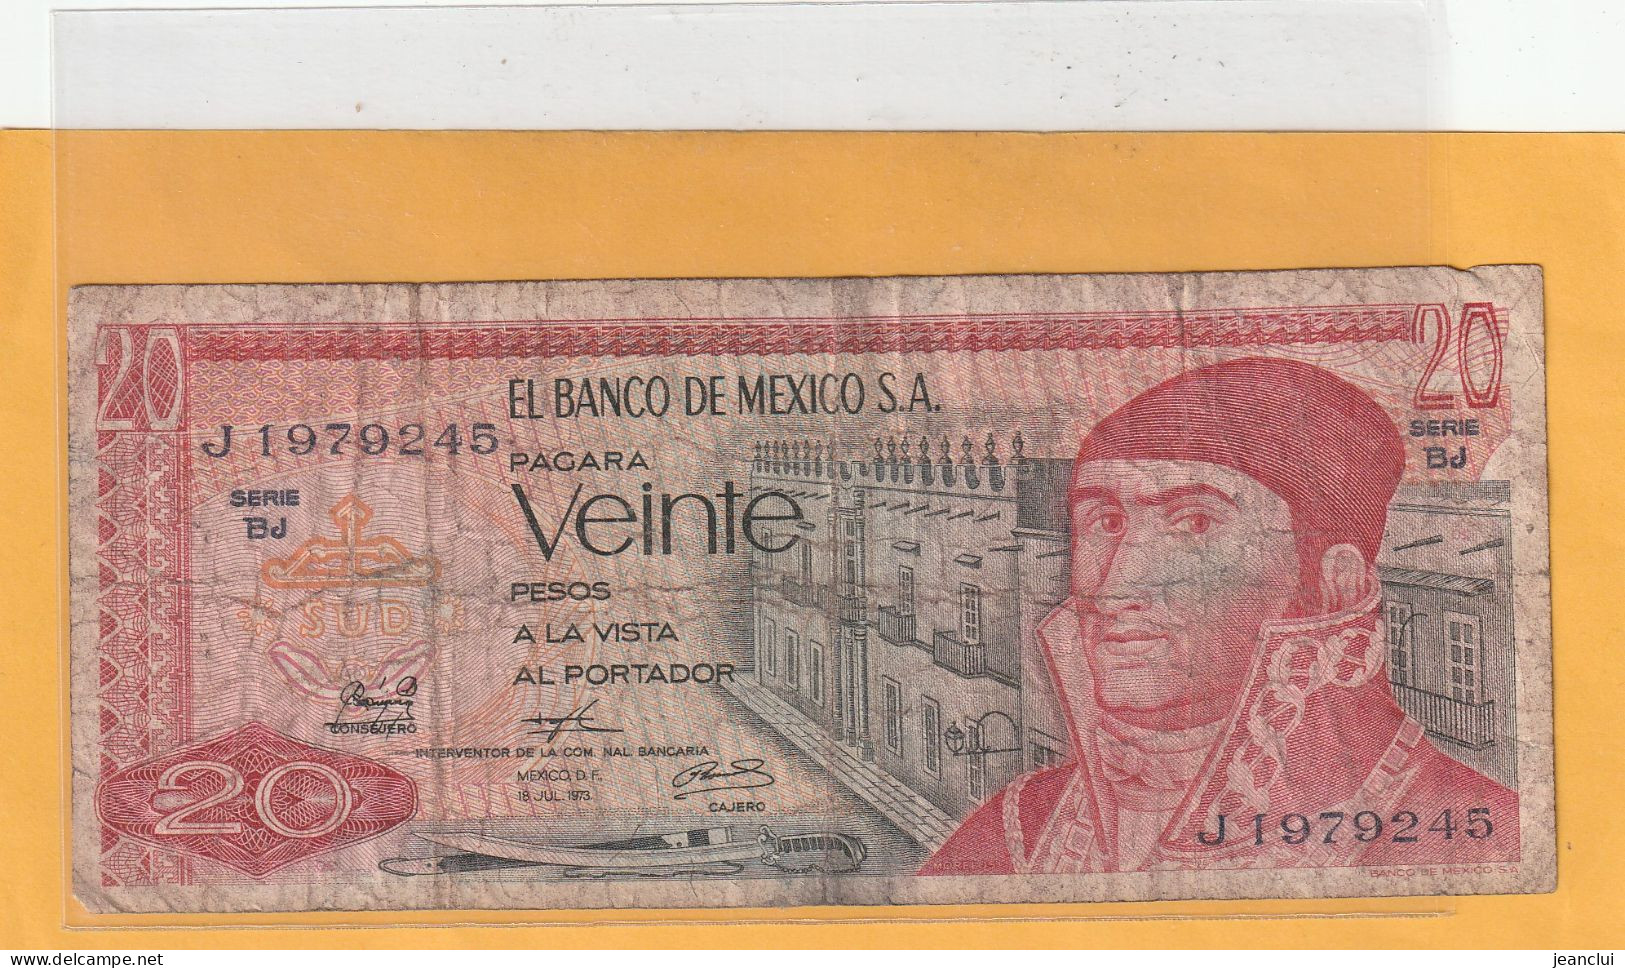 EL BANCO DE MEXICO S.A.   .  20 PESOS  .  18-7-1973  .  N°  J 1979245 .  2 SCANNES  .  BILLET TRES USITE - Mexiko